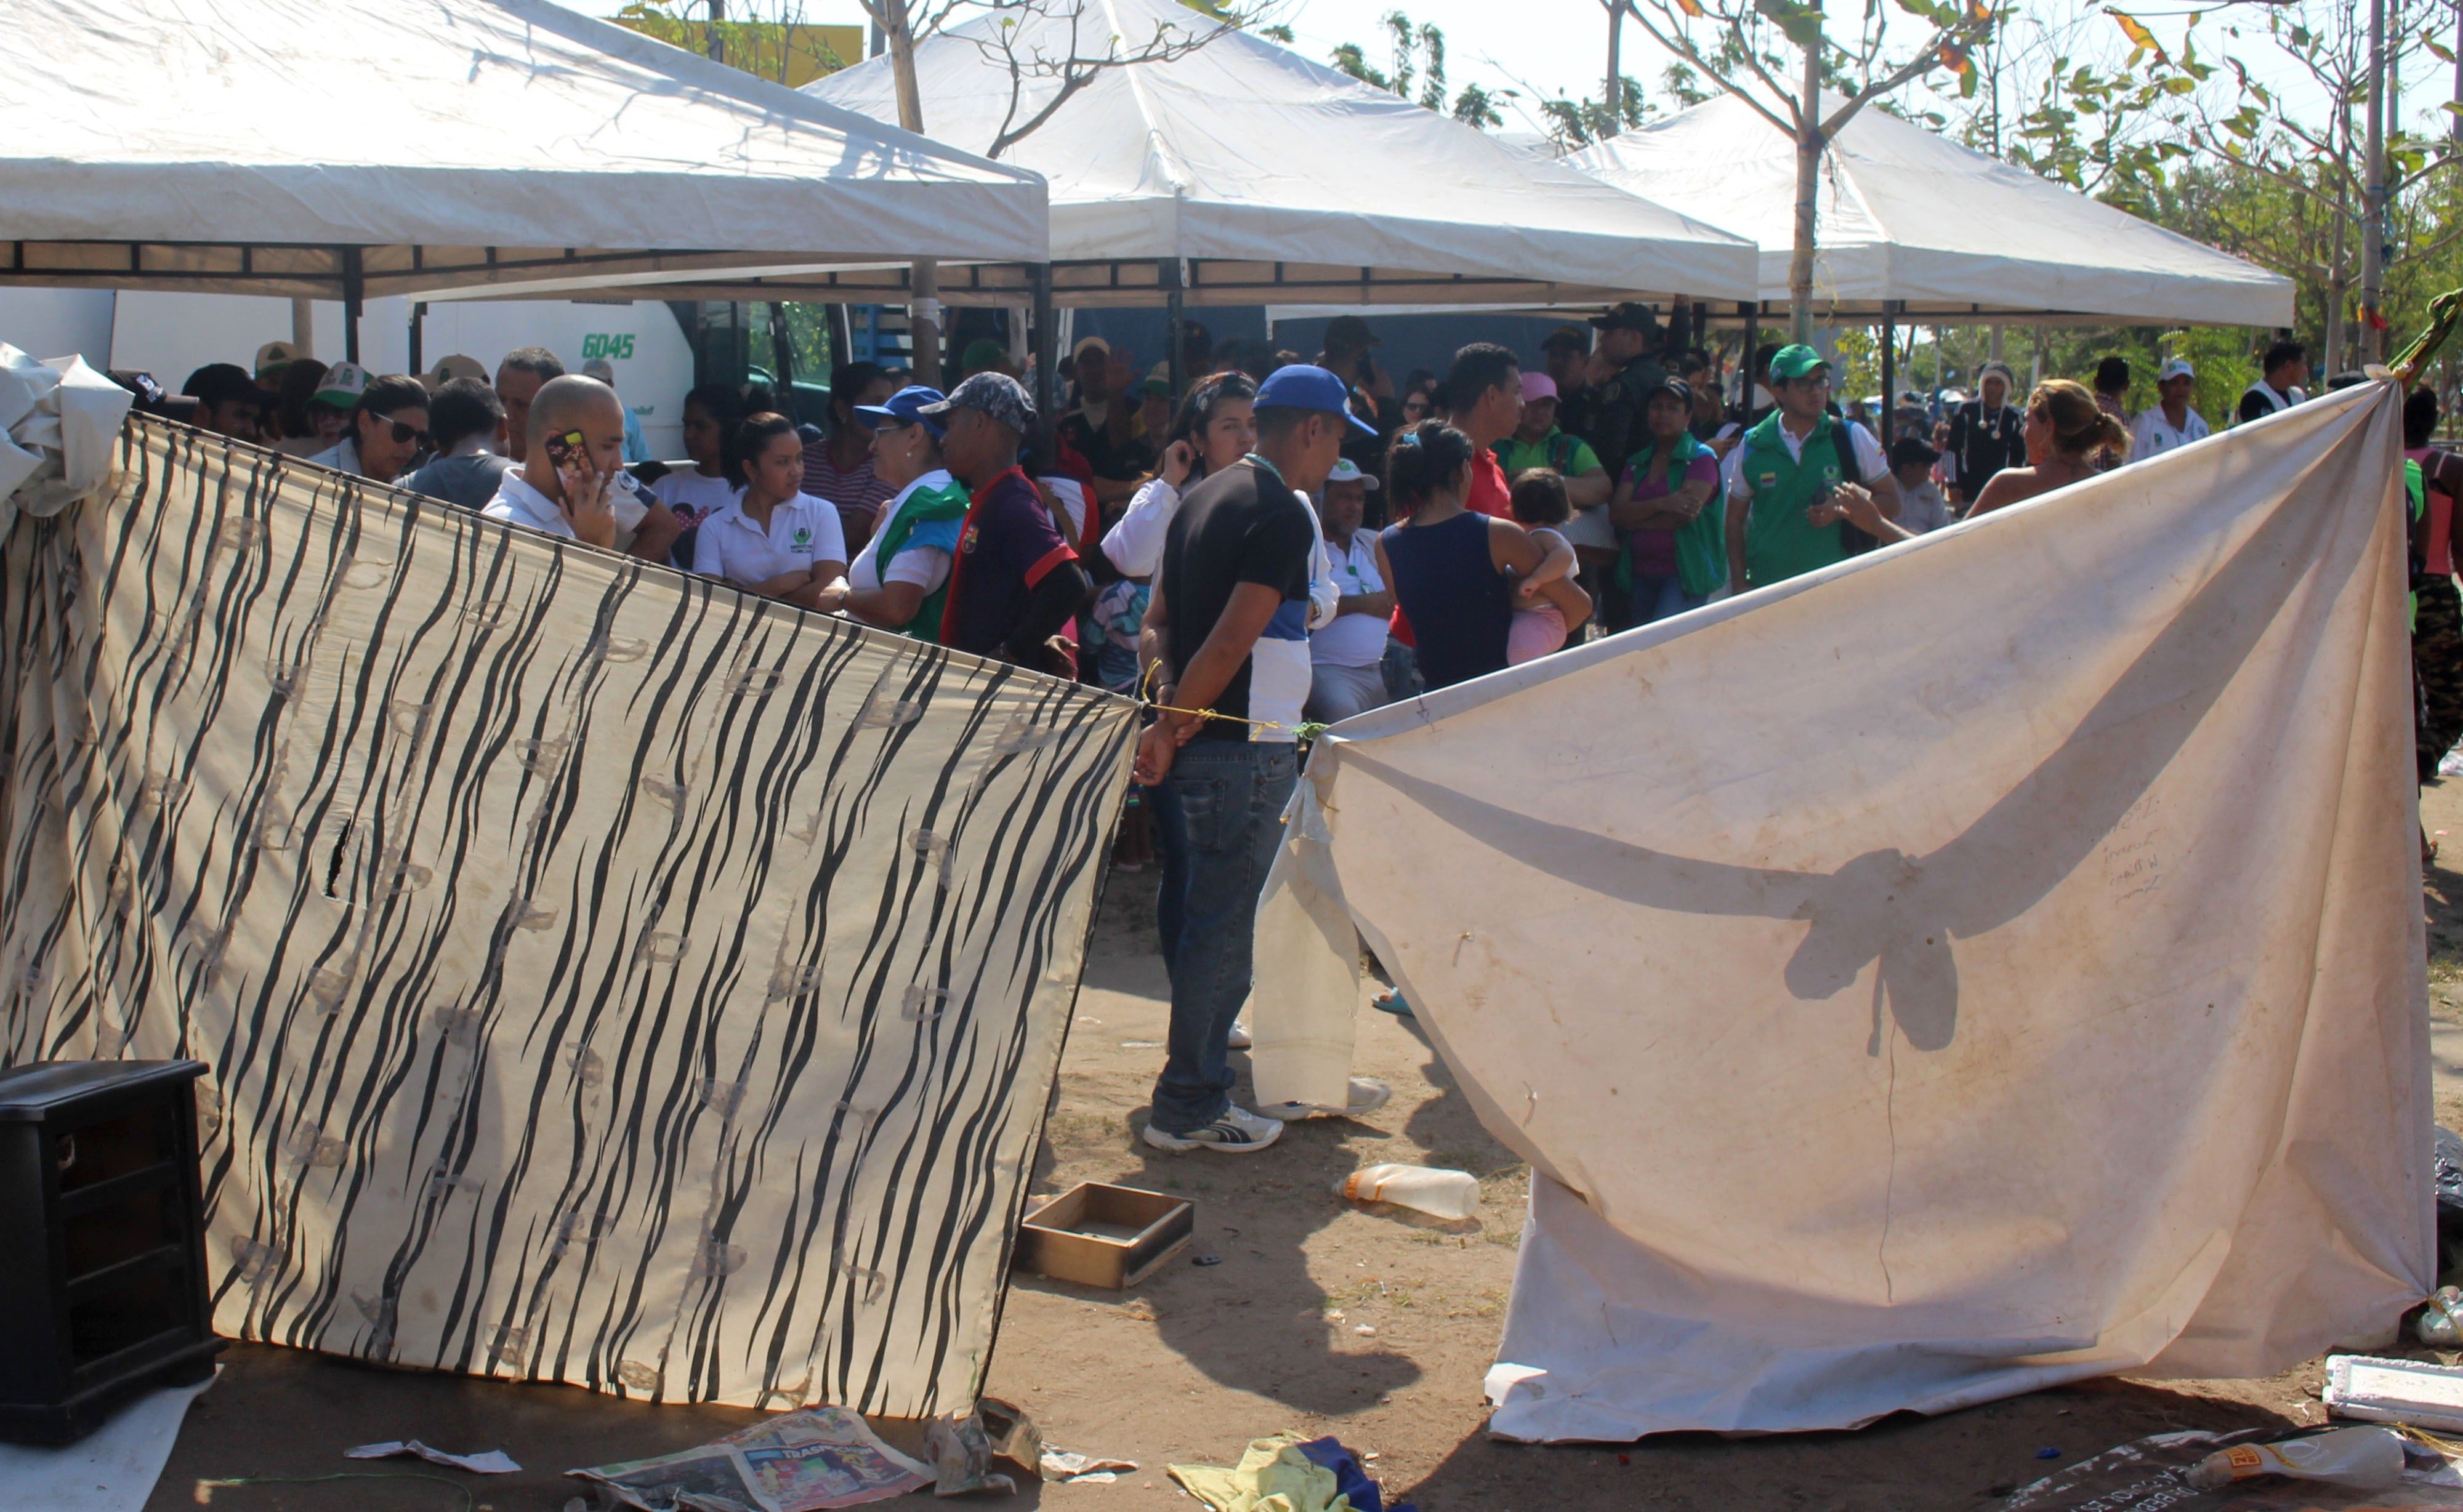 La angustia y el lamento de migrantes venezolanos desalojados de terreno invadido en Barranquilla (fotos)